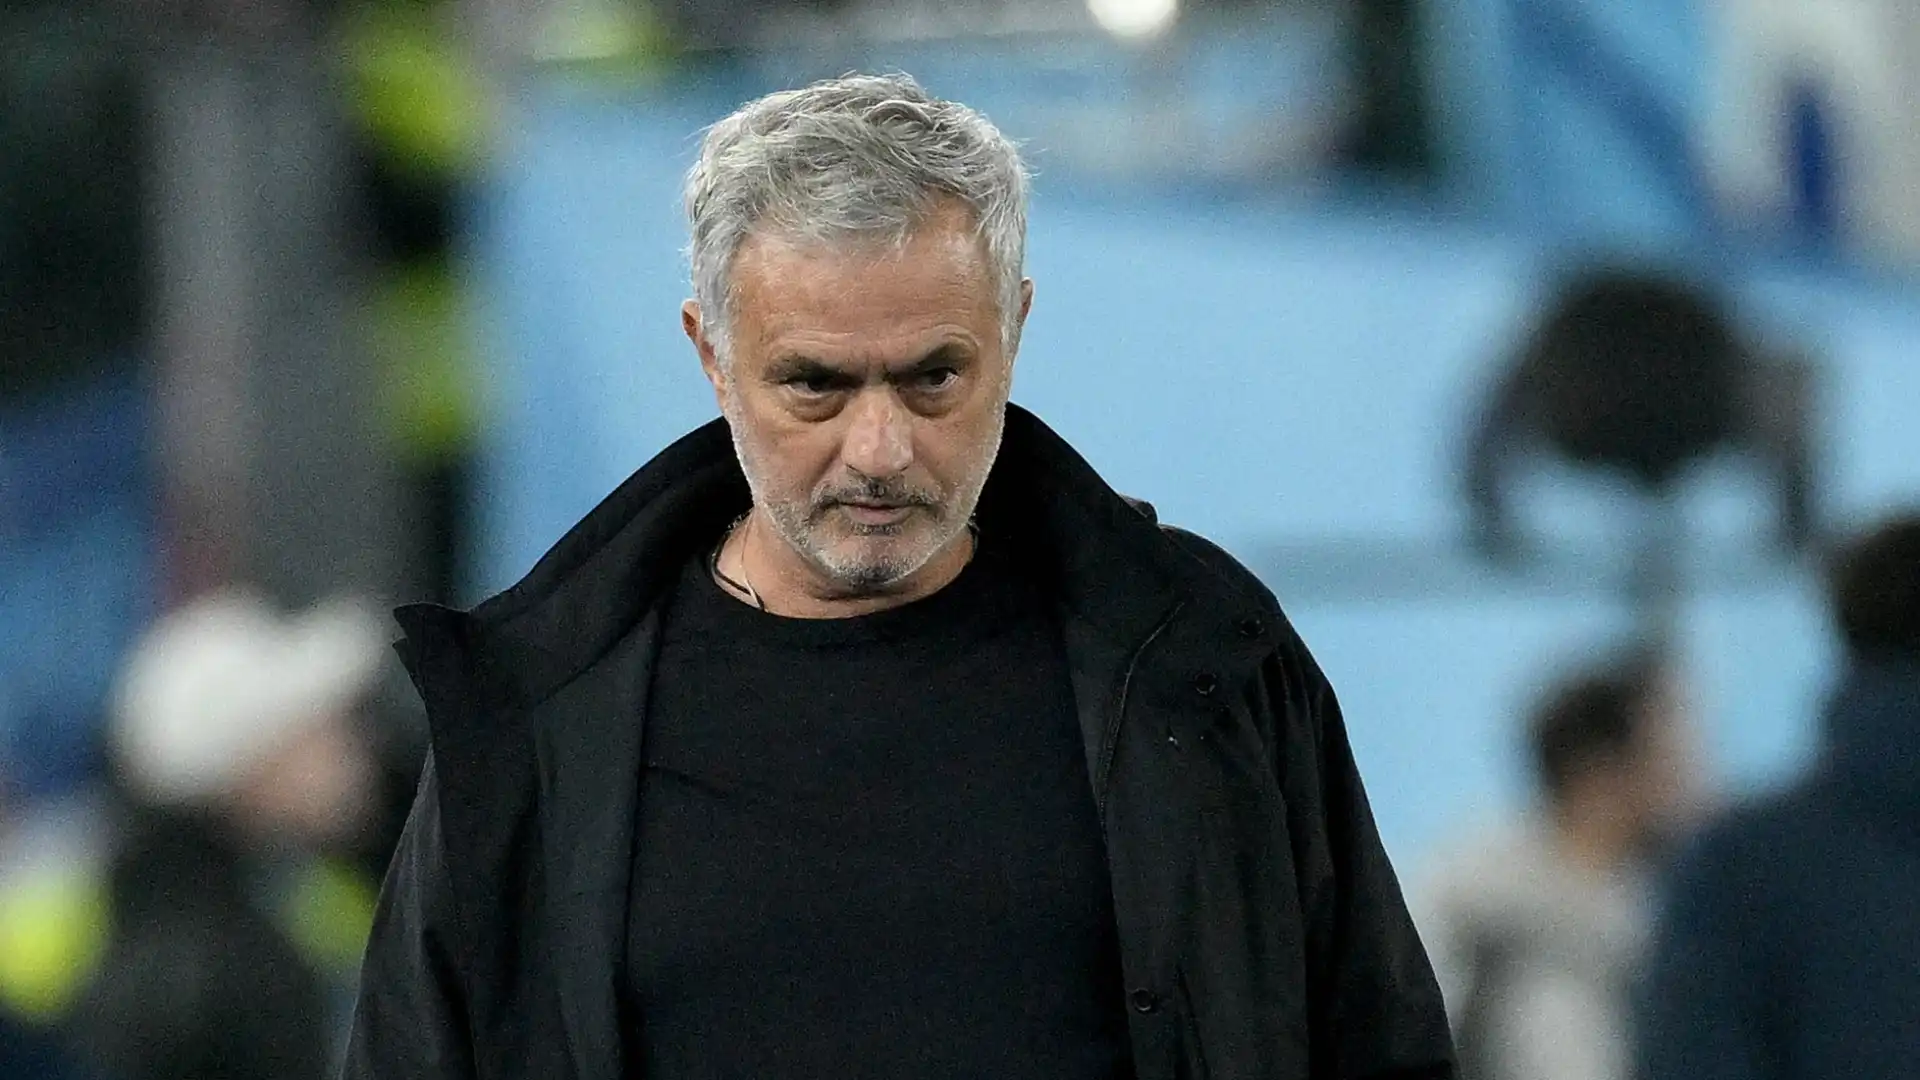 José Mourinho non sa se resterà a Roma